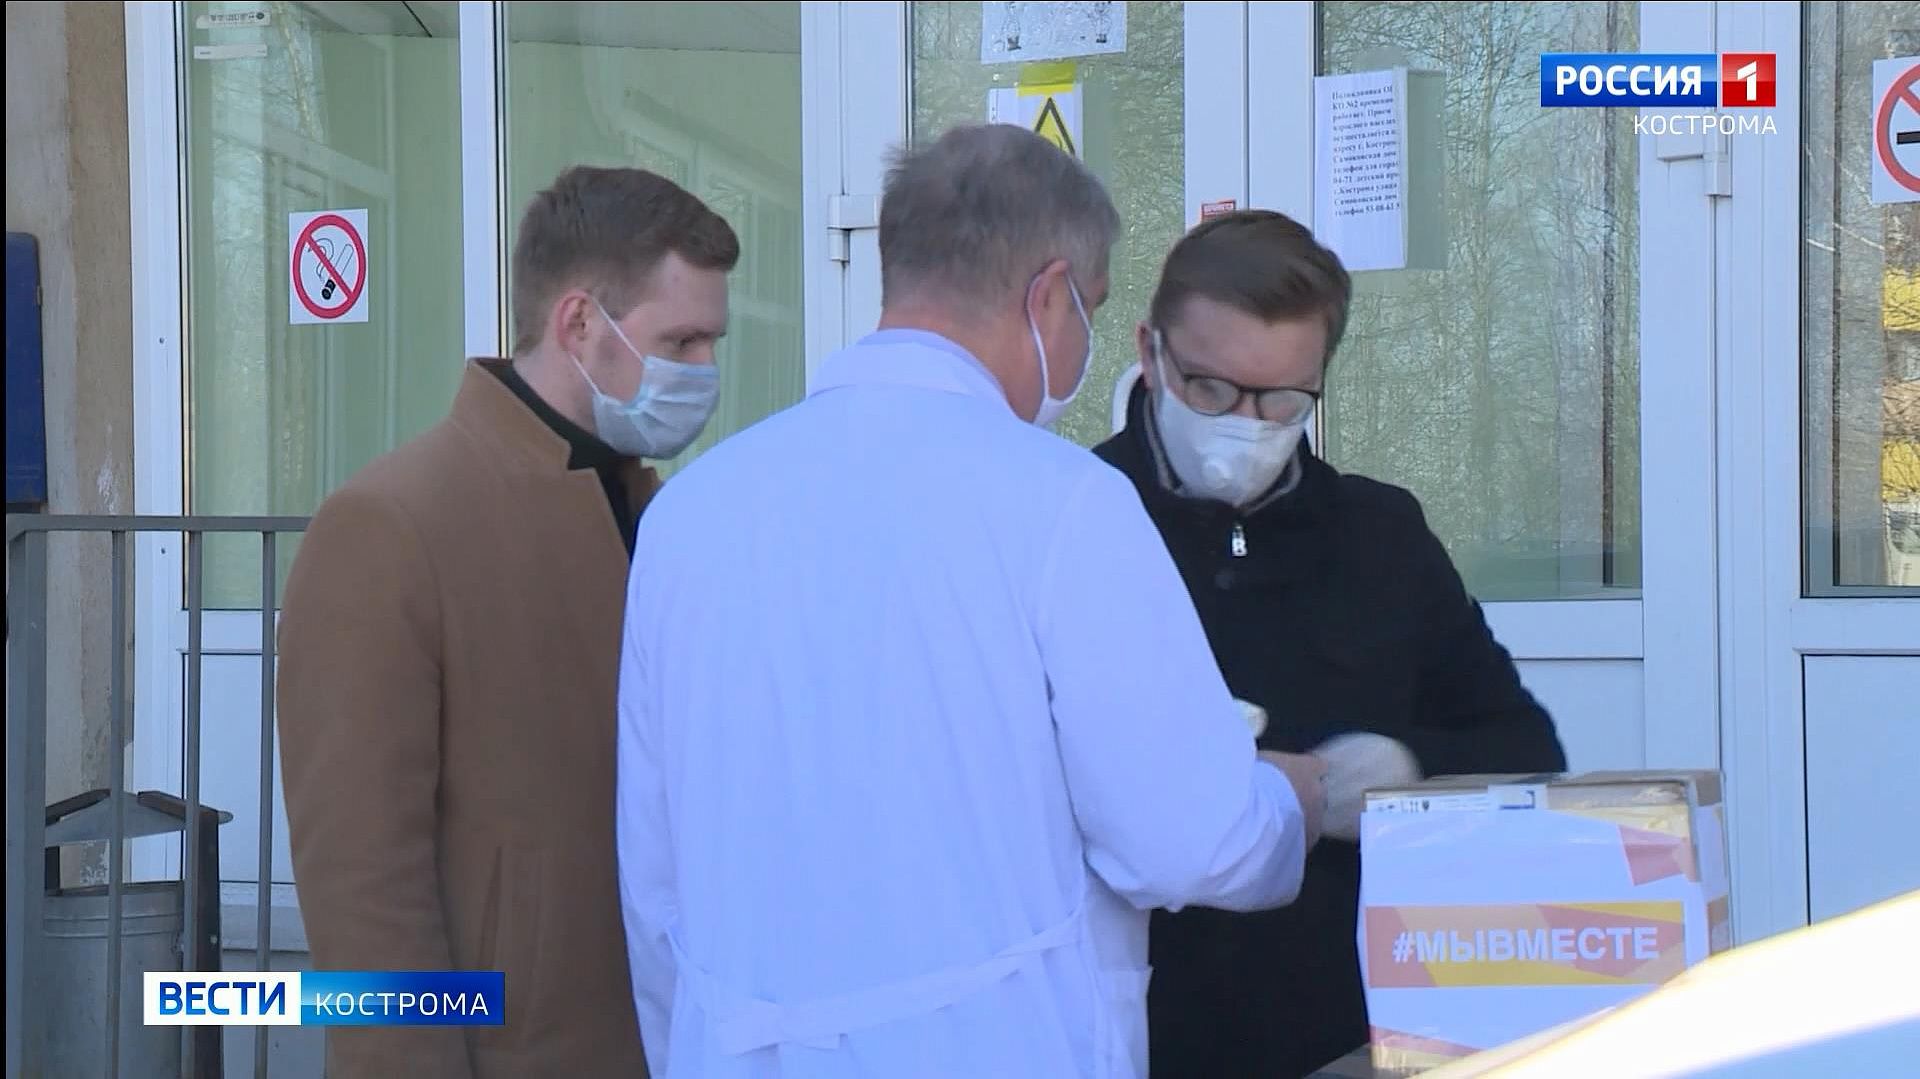 Волонтёры привезли в костромскую «инфекционку» маски, халаты и дезсредства